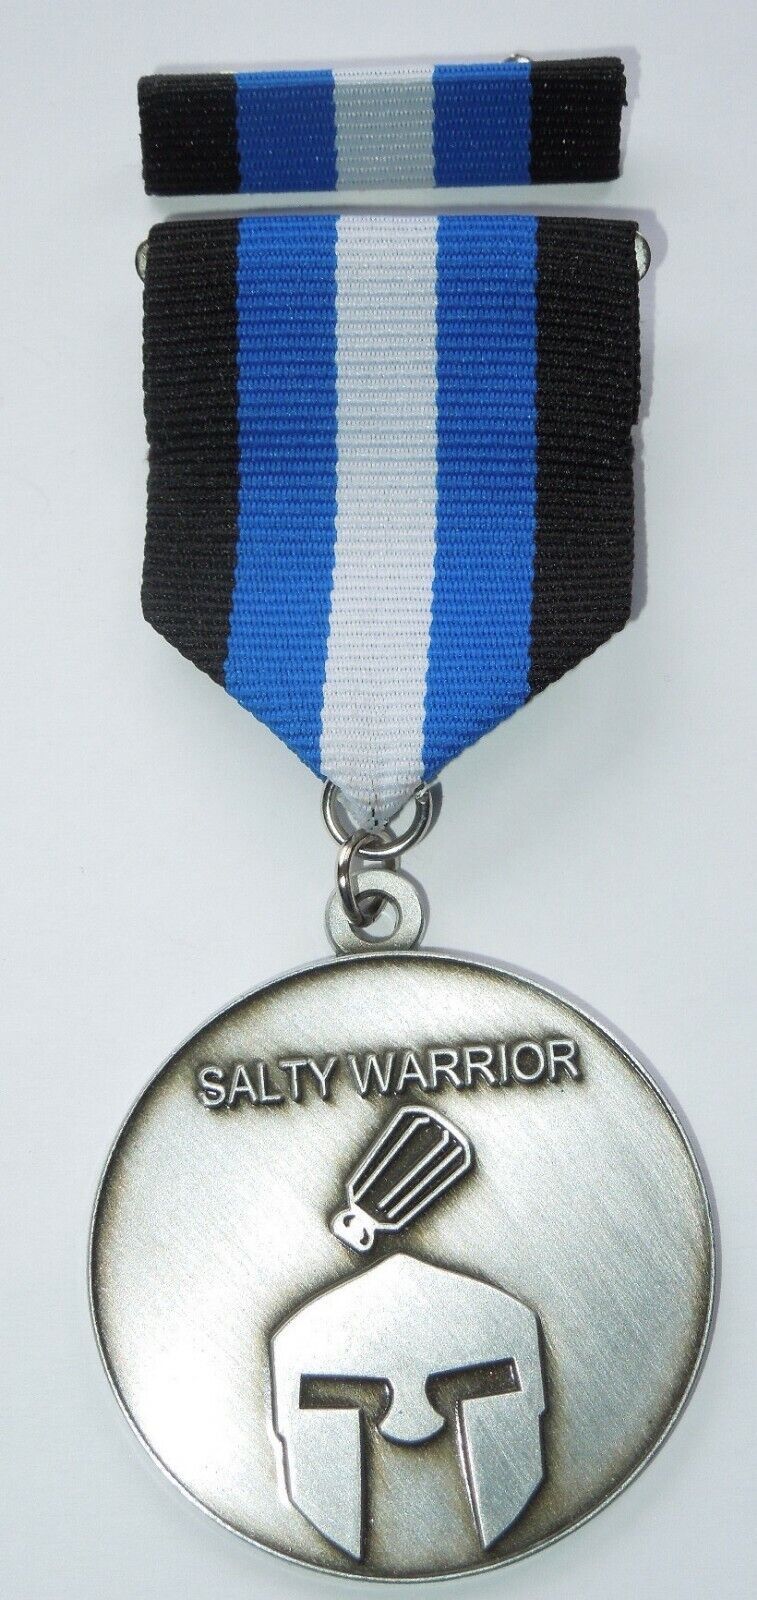 THE SALTY WARRIOR Police LEO Humor Retirement Gag Gift Medal